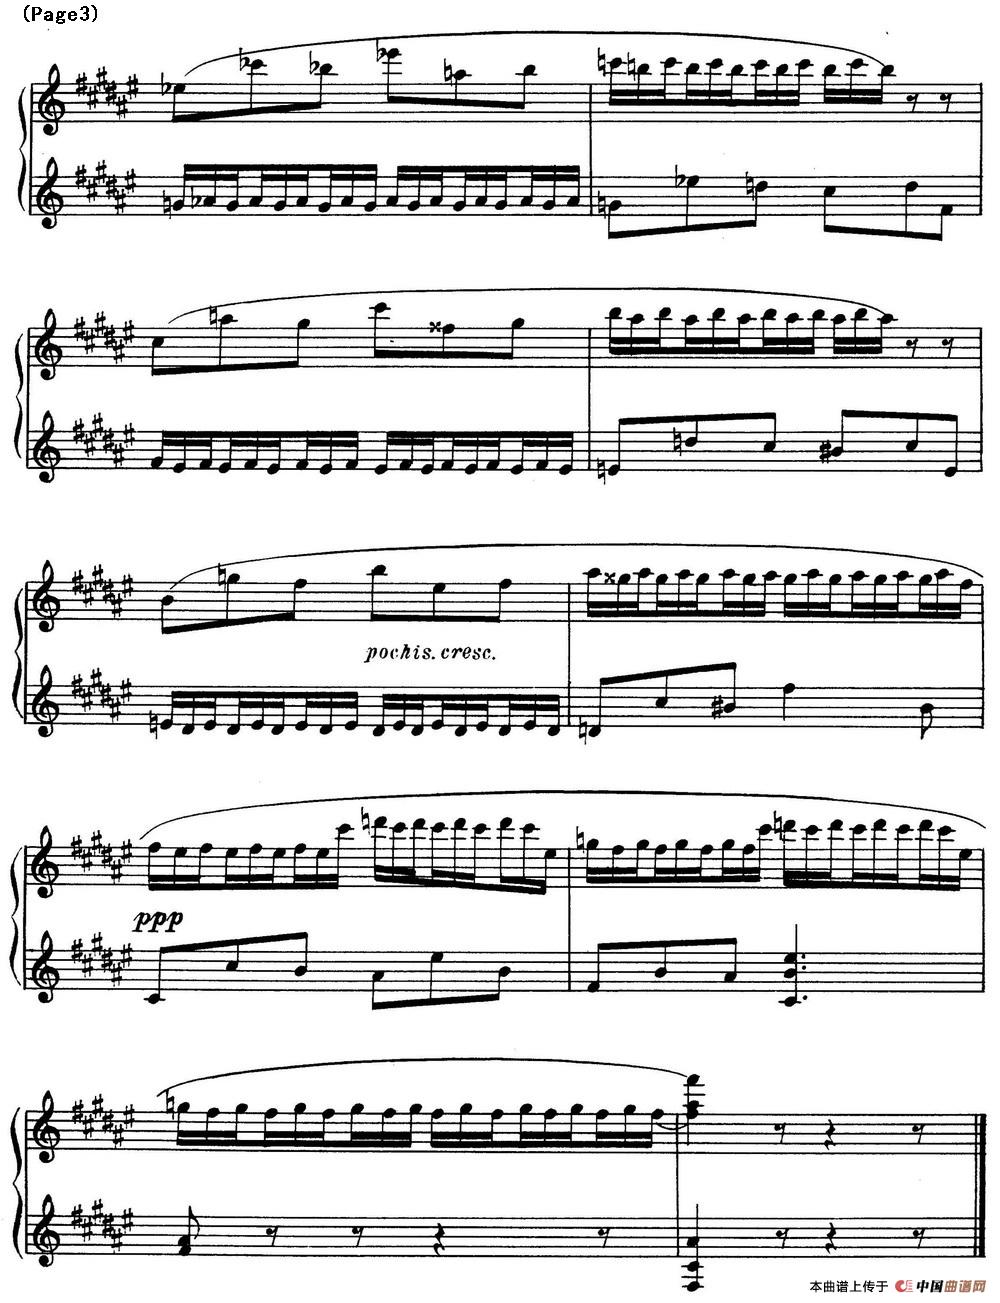 斯克里亚宾8首钢琴练习曲 Op42（No.3 Alexander Scriabin Etudes）(1)_Scriabin Etude Op.42 No.3_页面_3.jpg